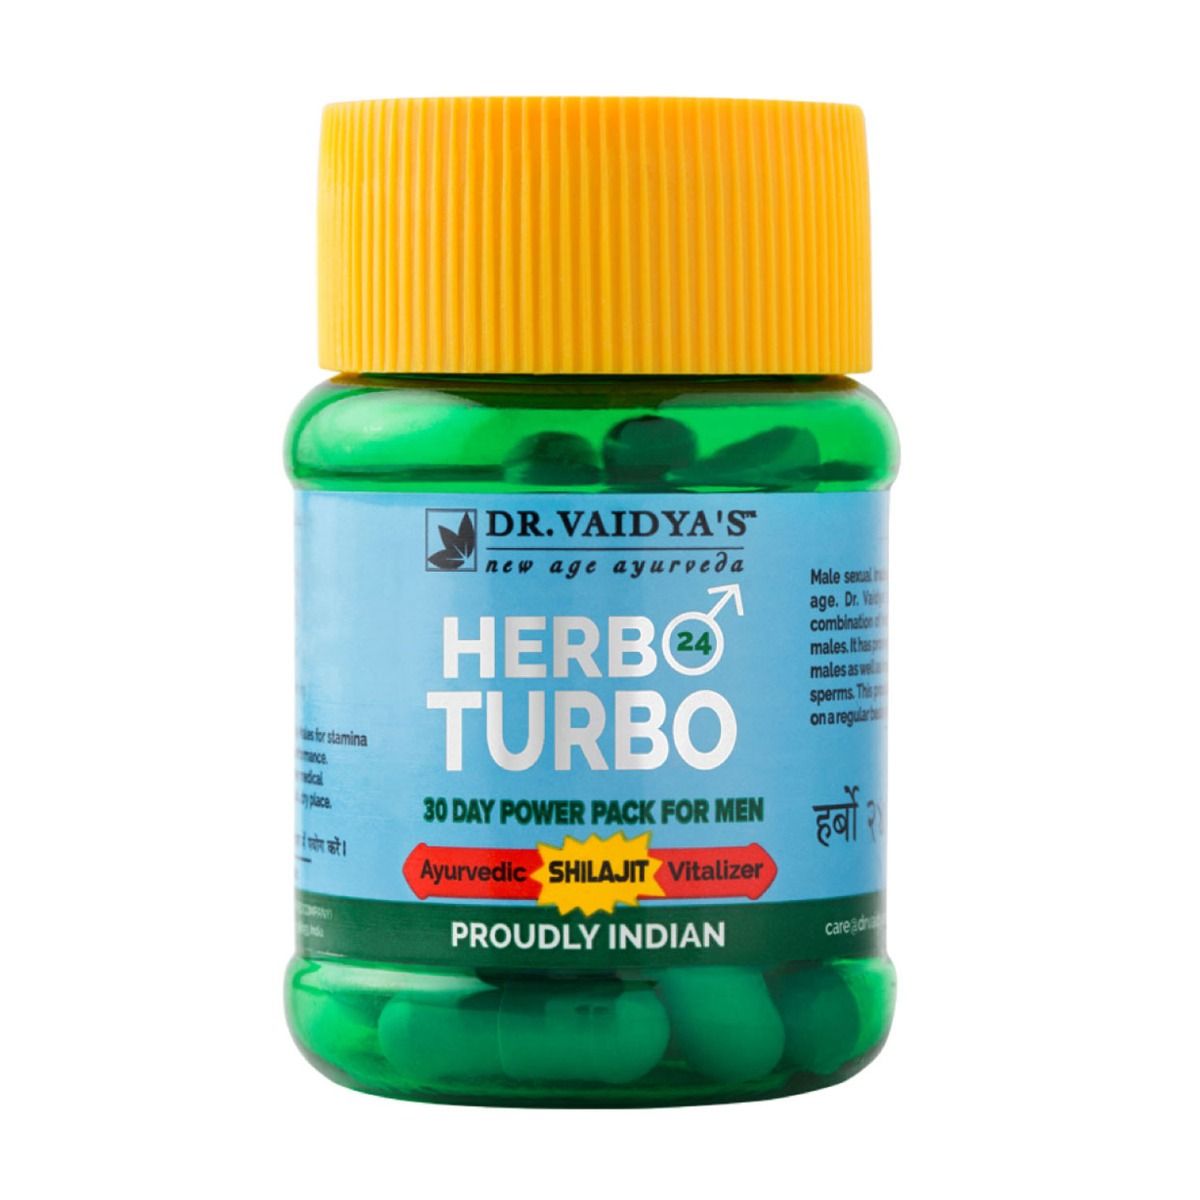 Buy Dr. Vaidya's Herbo 24 Turbo Shilajit, 30 Capsules Online